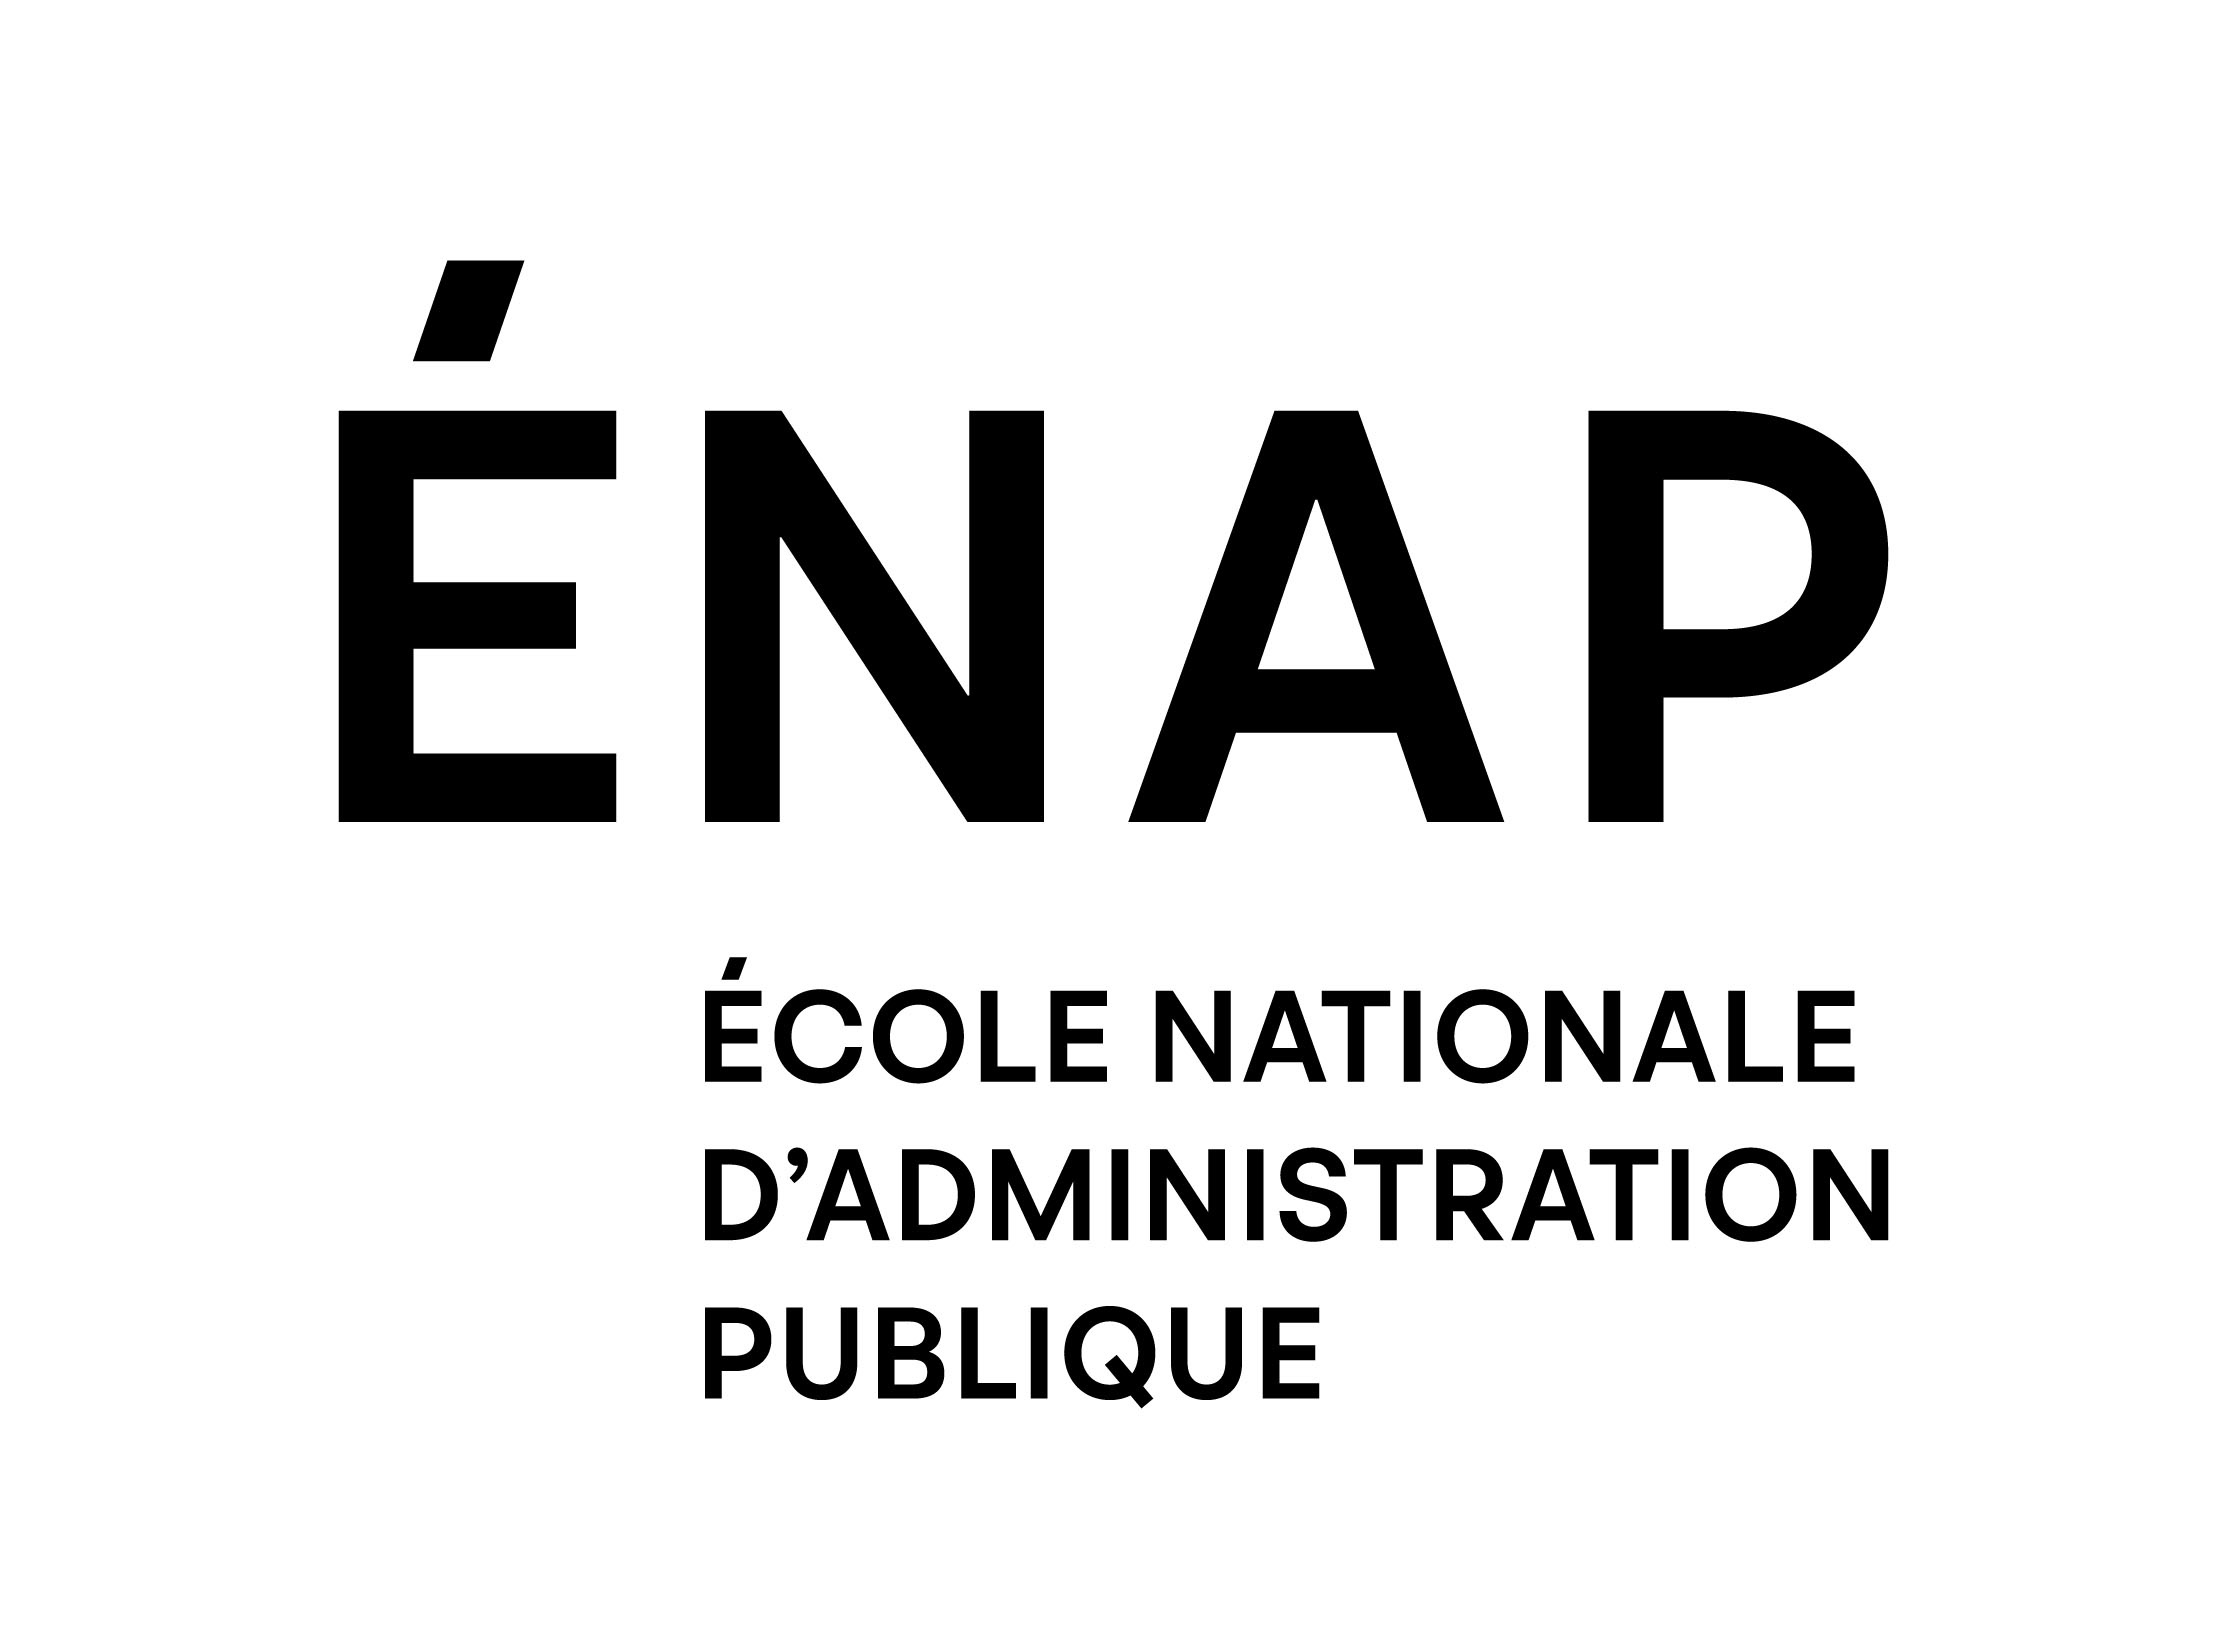 École nationale d’administration publique (ENAP)